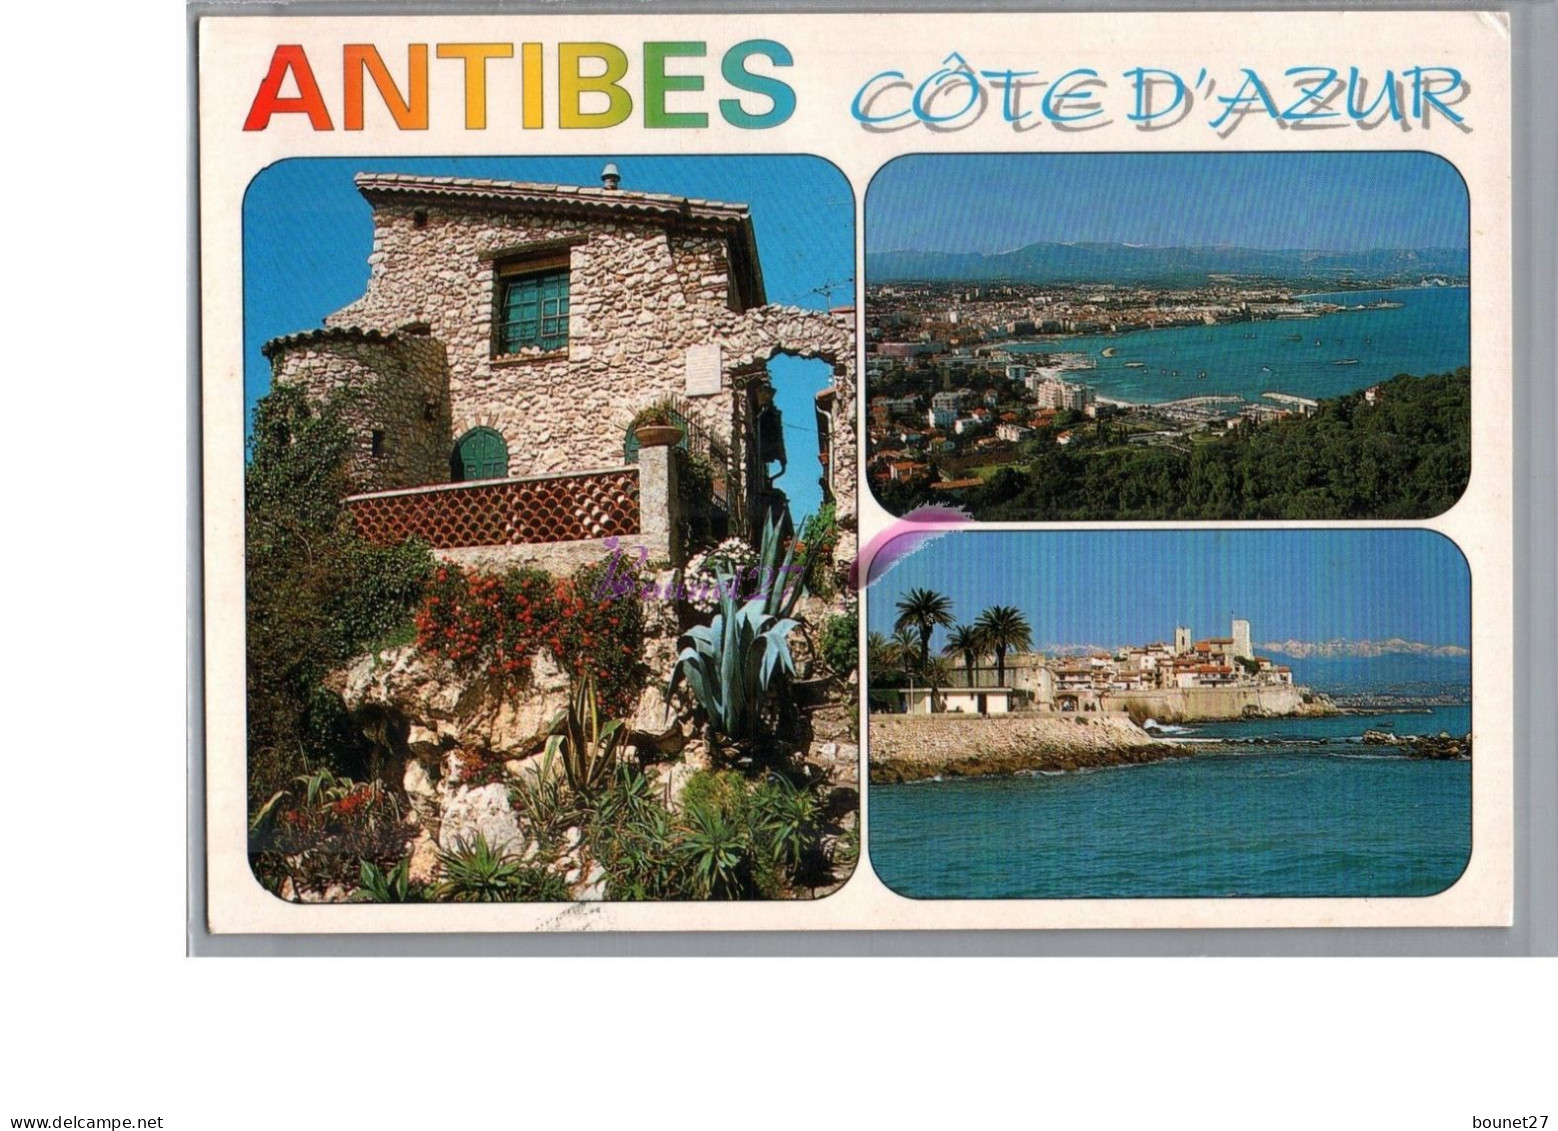 ANTIBES 06 - Une Vielle Maison En Pierre Vue Générale Du Port Et De La Baie - Antibes - Altstadt